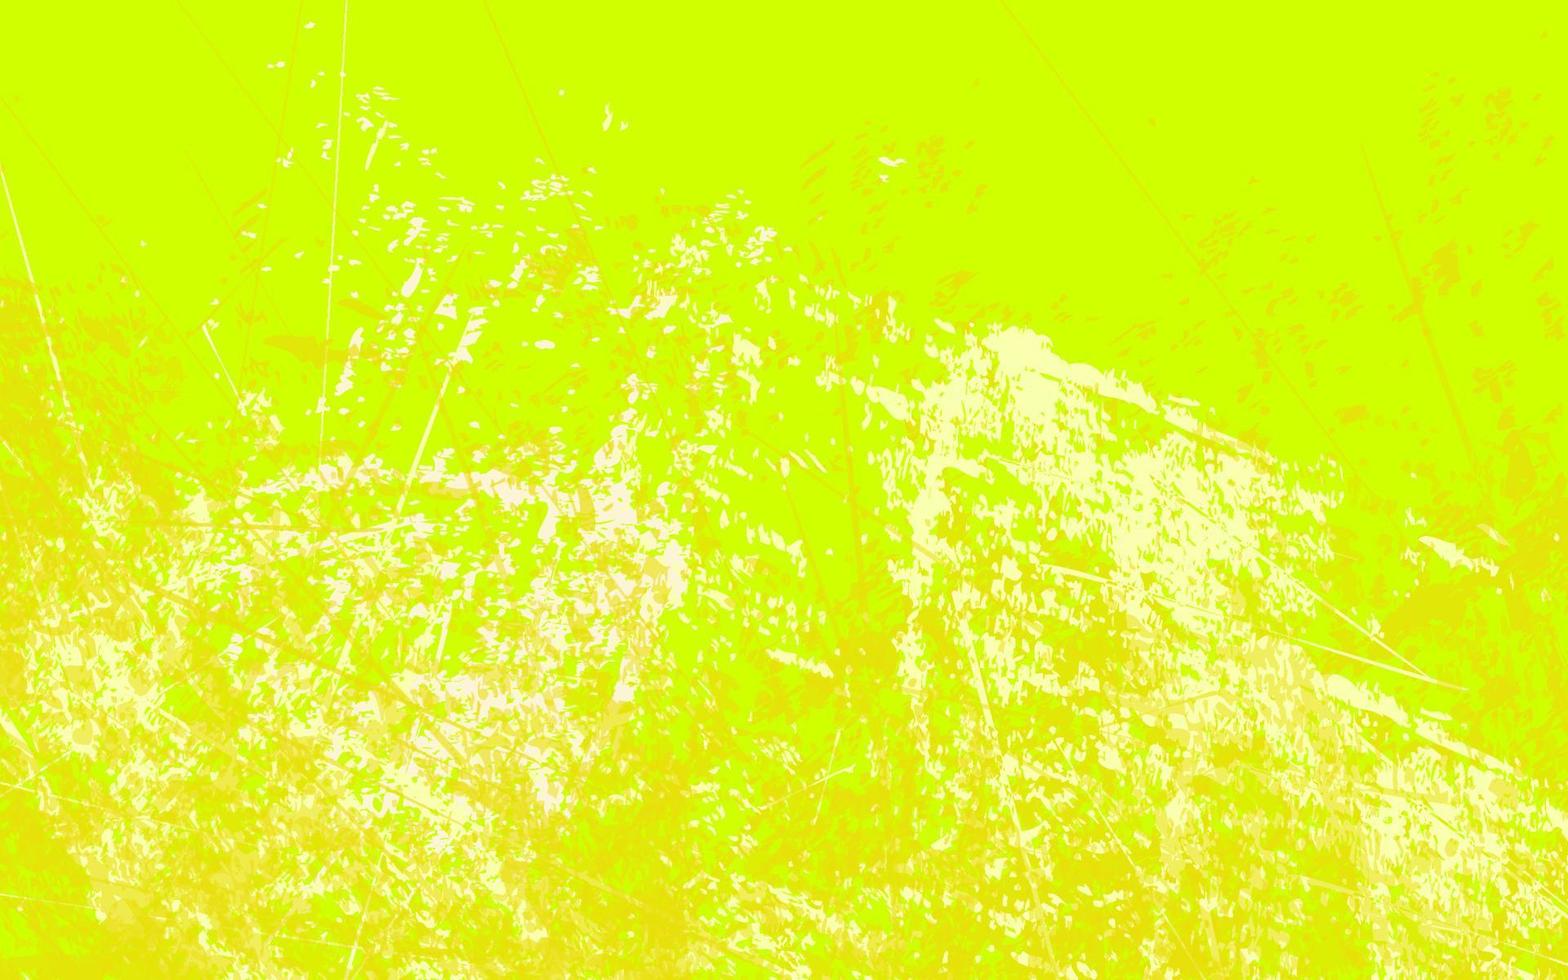 fundo abstrato de cor amarela e branca vetor